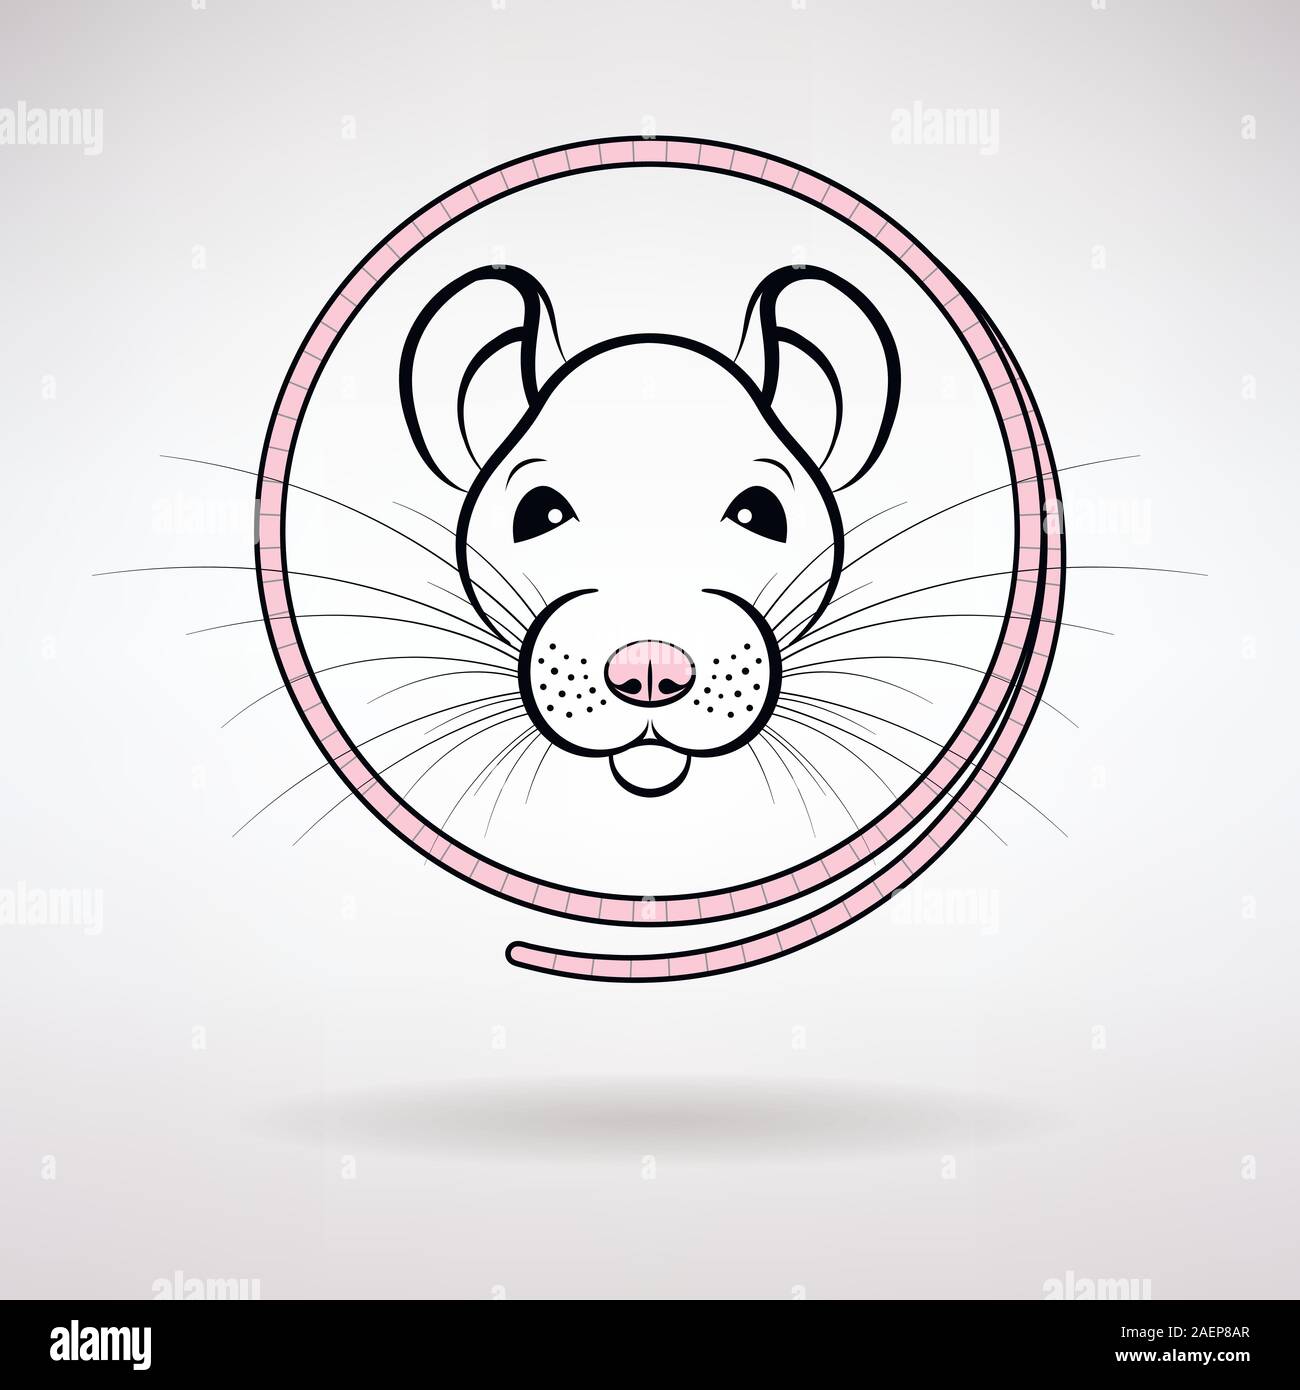 Weiße Ratte Symbol des Jahres auf einem hellen Hintergrund Stock Vektor